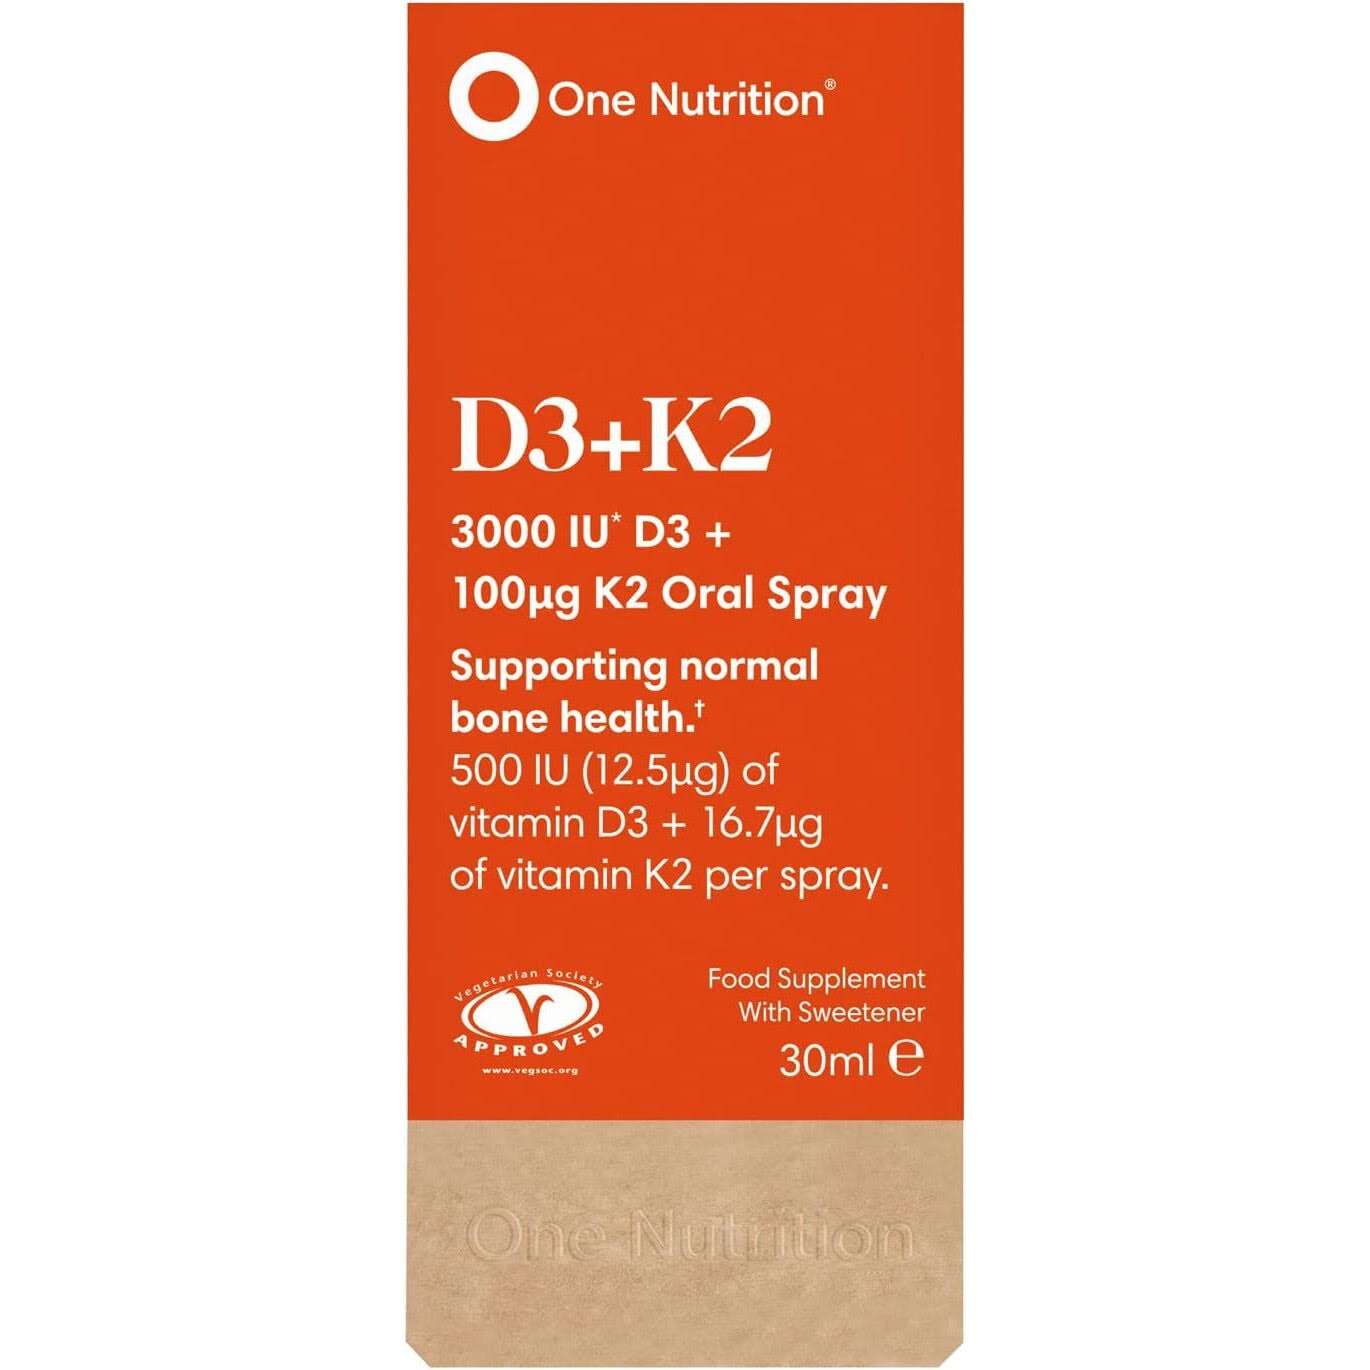 One Nutrition D3 + K2 - 30ml Oral Spray